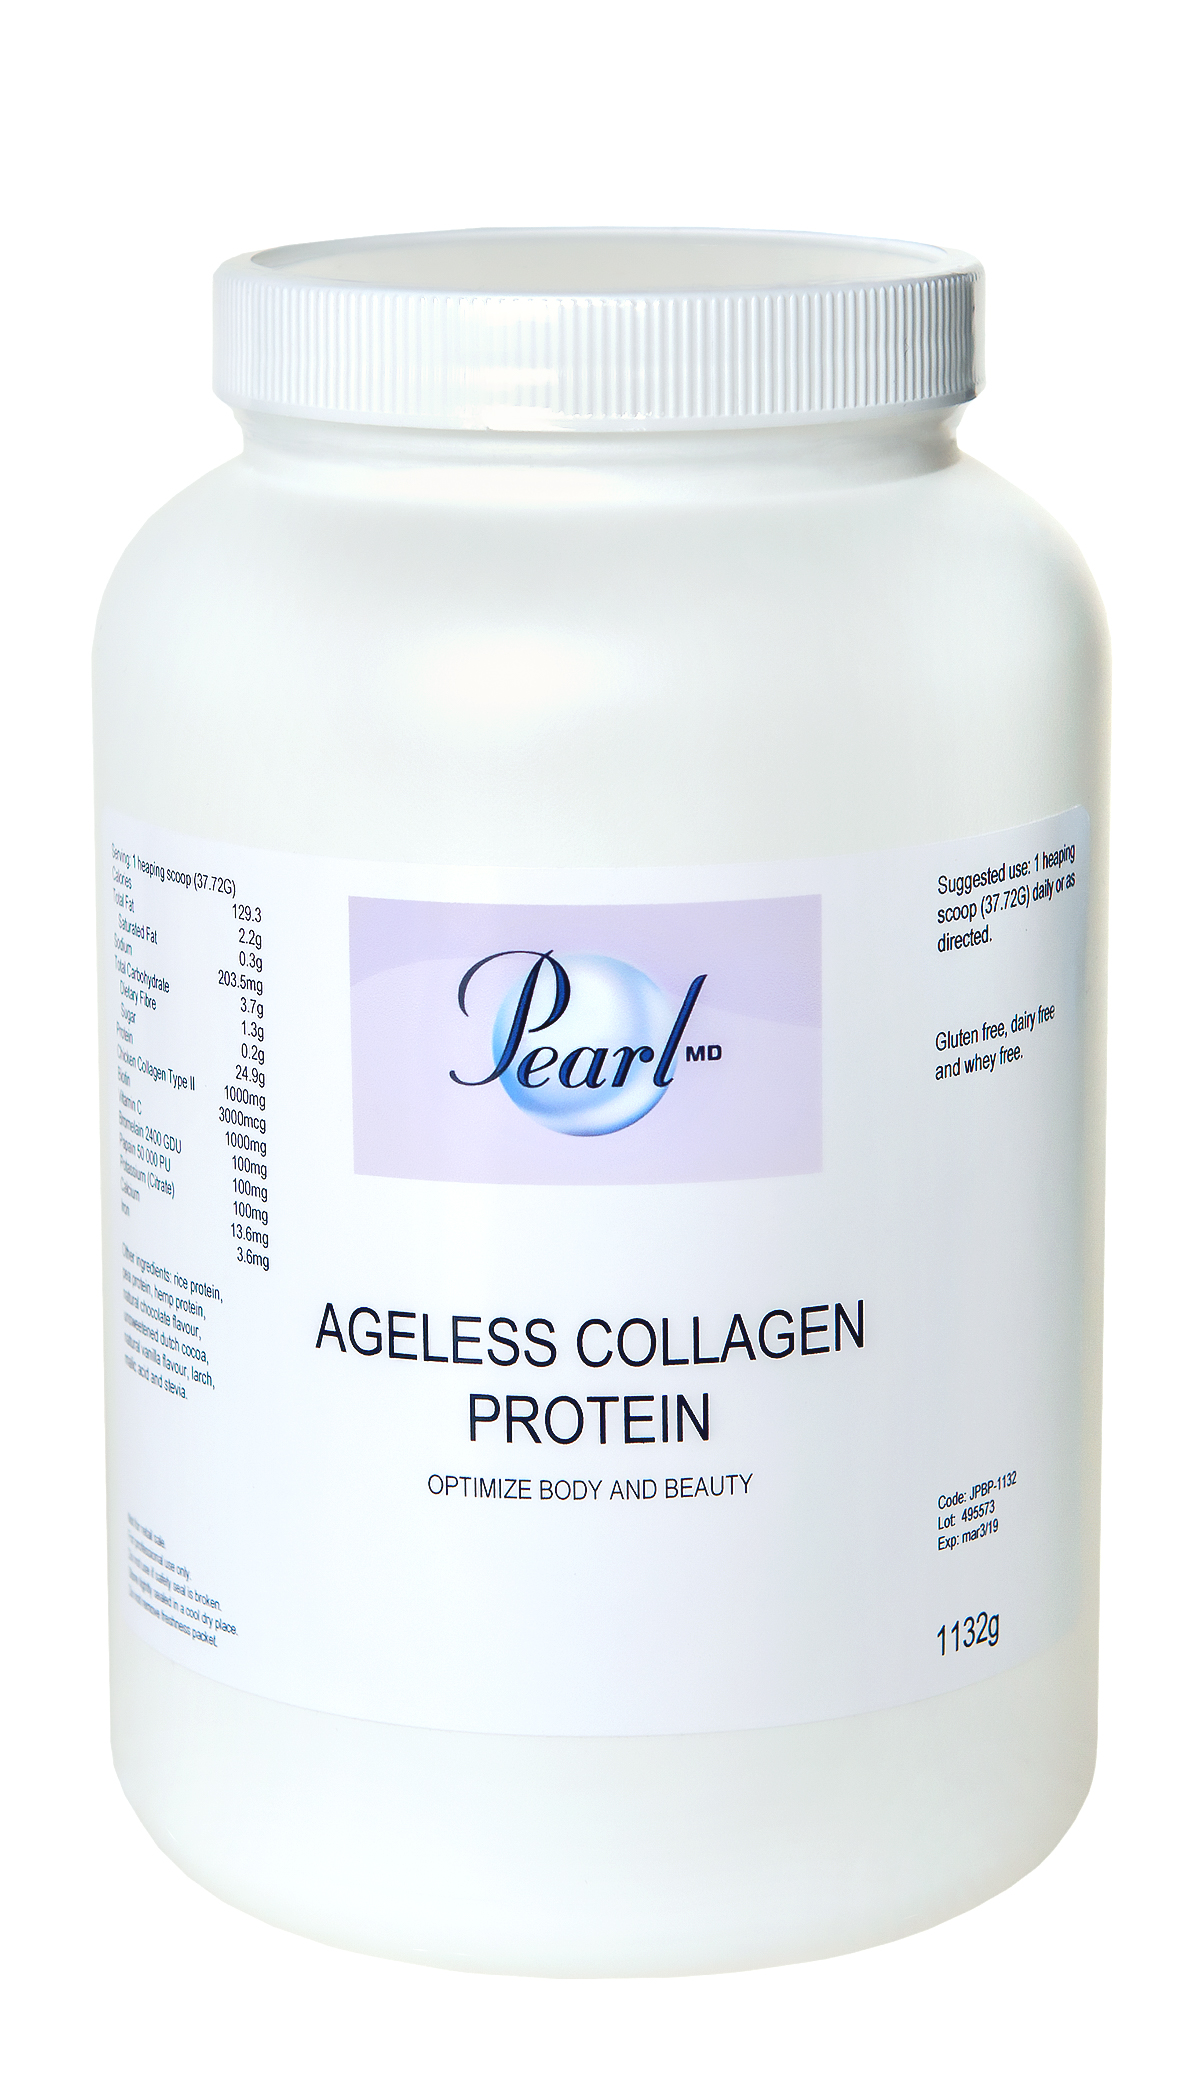 Ageless Collagen Protein